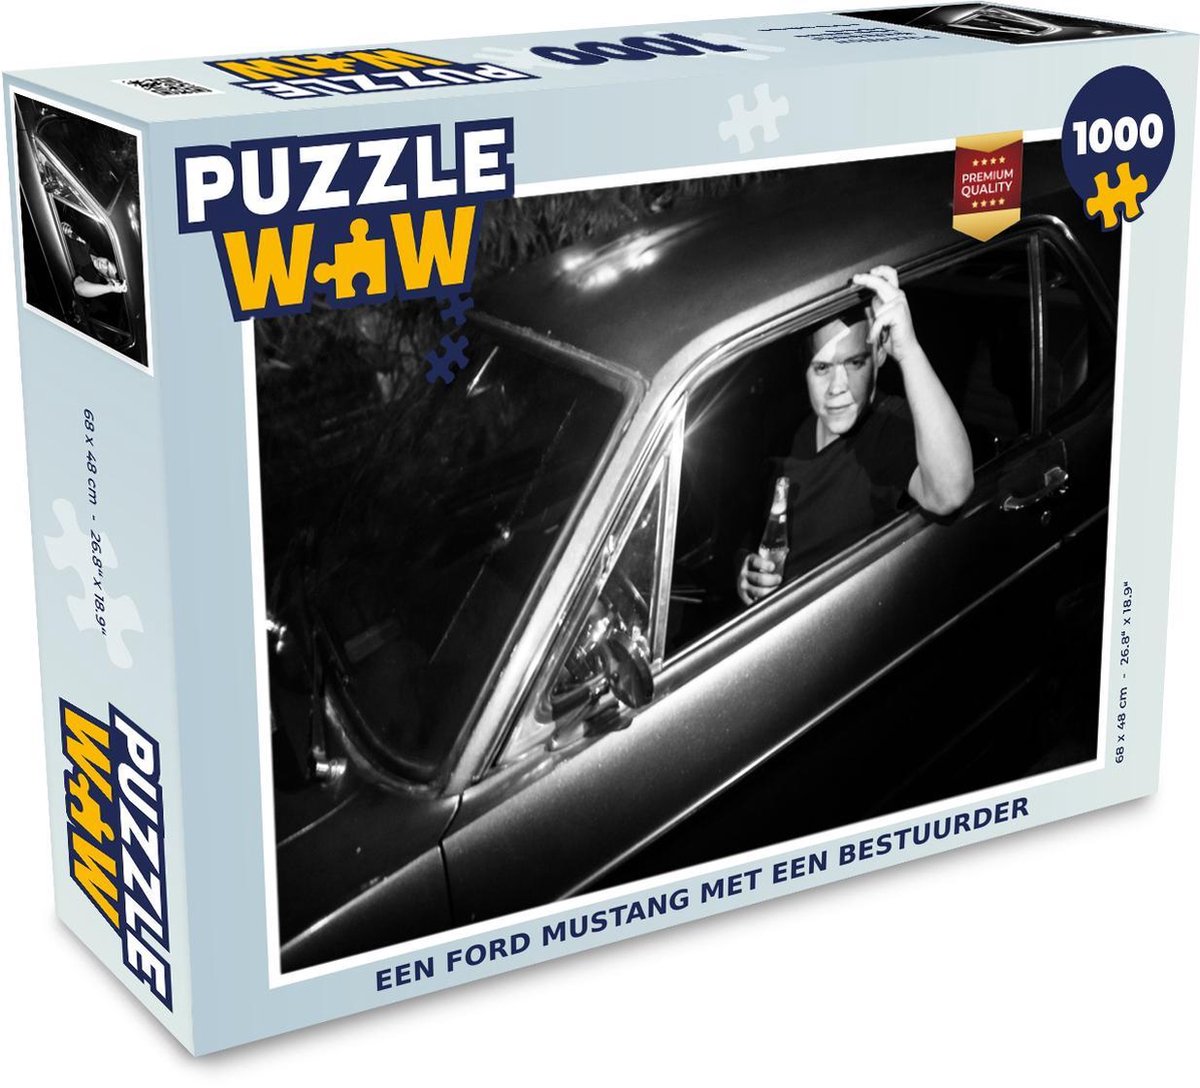 Afbeelding van product Puzzel 1000 stukjes volwassenen Mustang 1000 stukjes - Een Ford Mustang met een bestuurder - PuzzleWow heeft +100000 puzzels